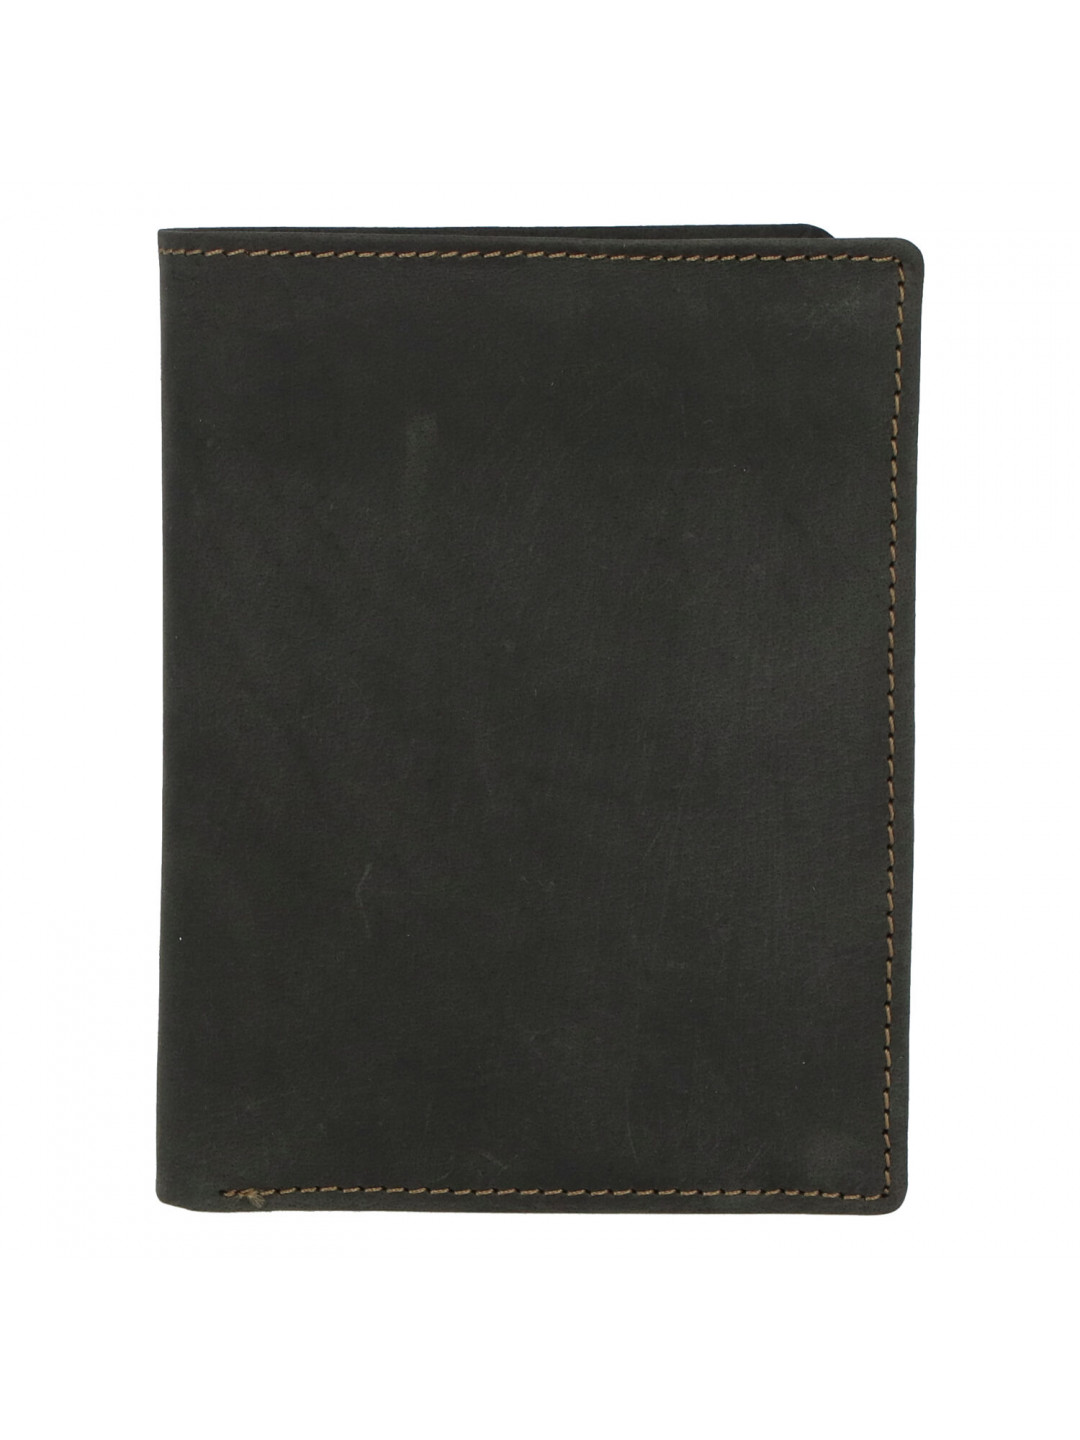 Pánská kožená peněženka černá broušená – Tomas Palac